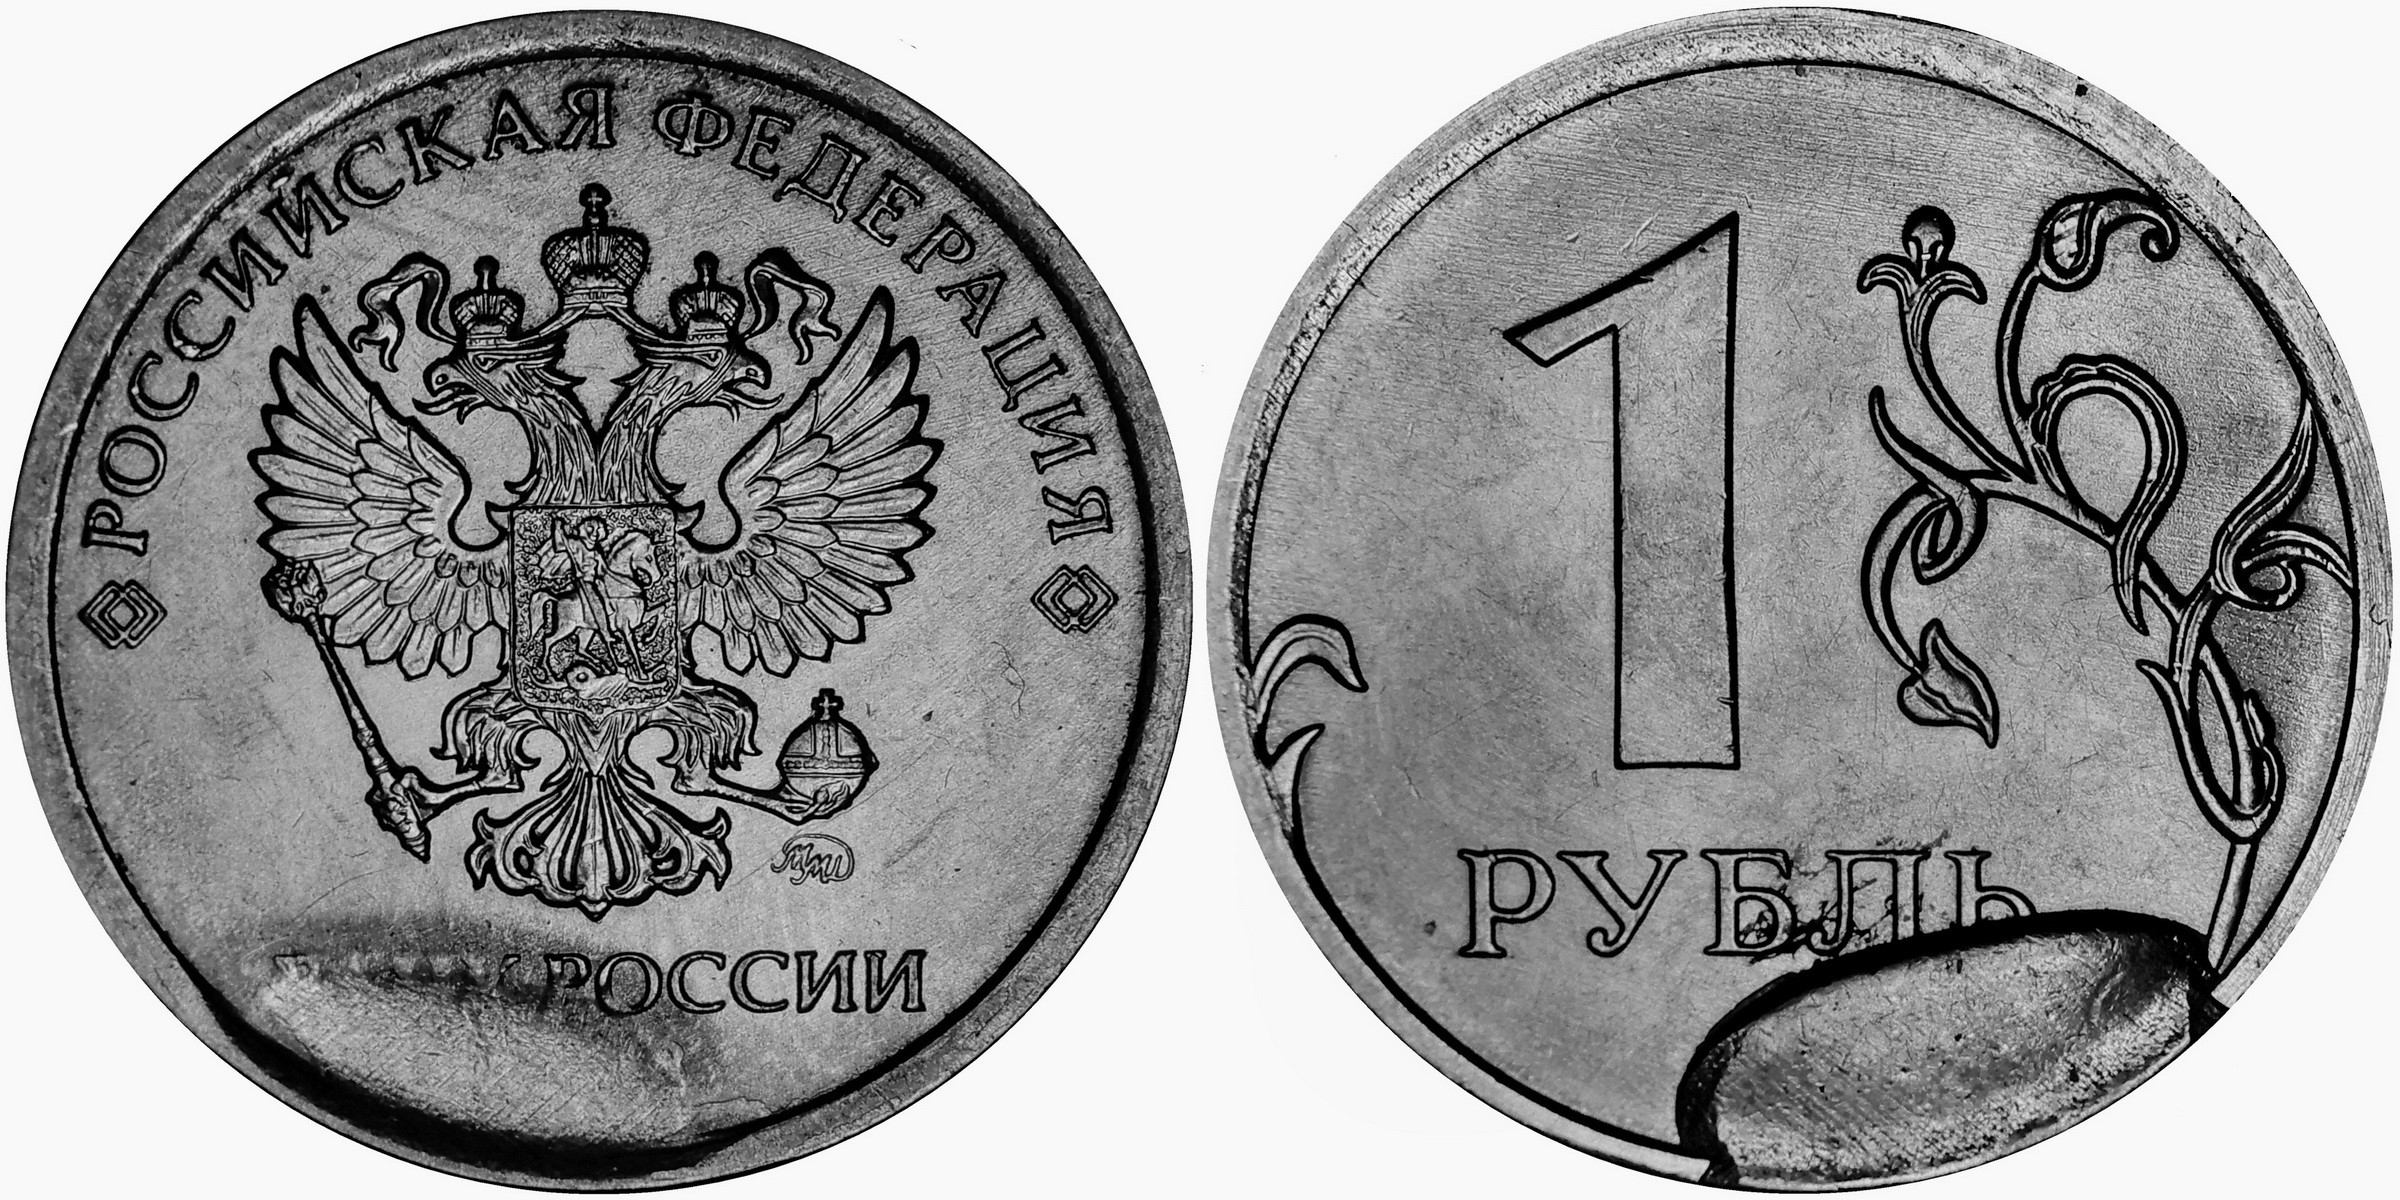 1 рубль разновидности. 1 Рубль 2020 года брак раскол. 1 Рубль 2020 брак раскол штемпеля. 1 Рубль 2020 года. Монета 1 рубль 2020.